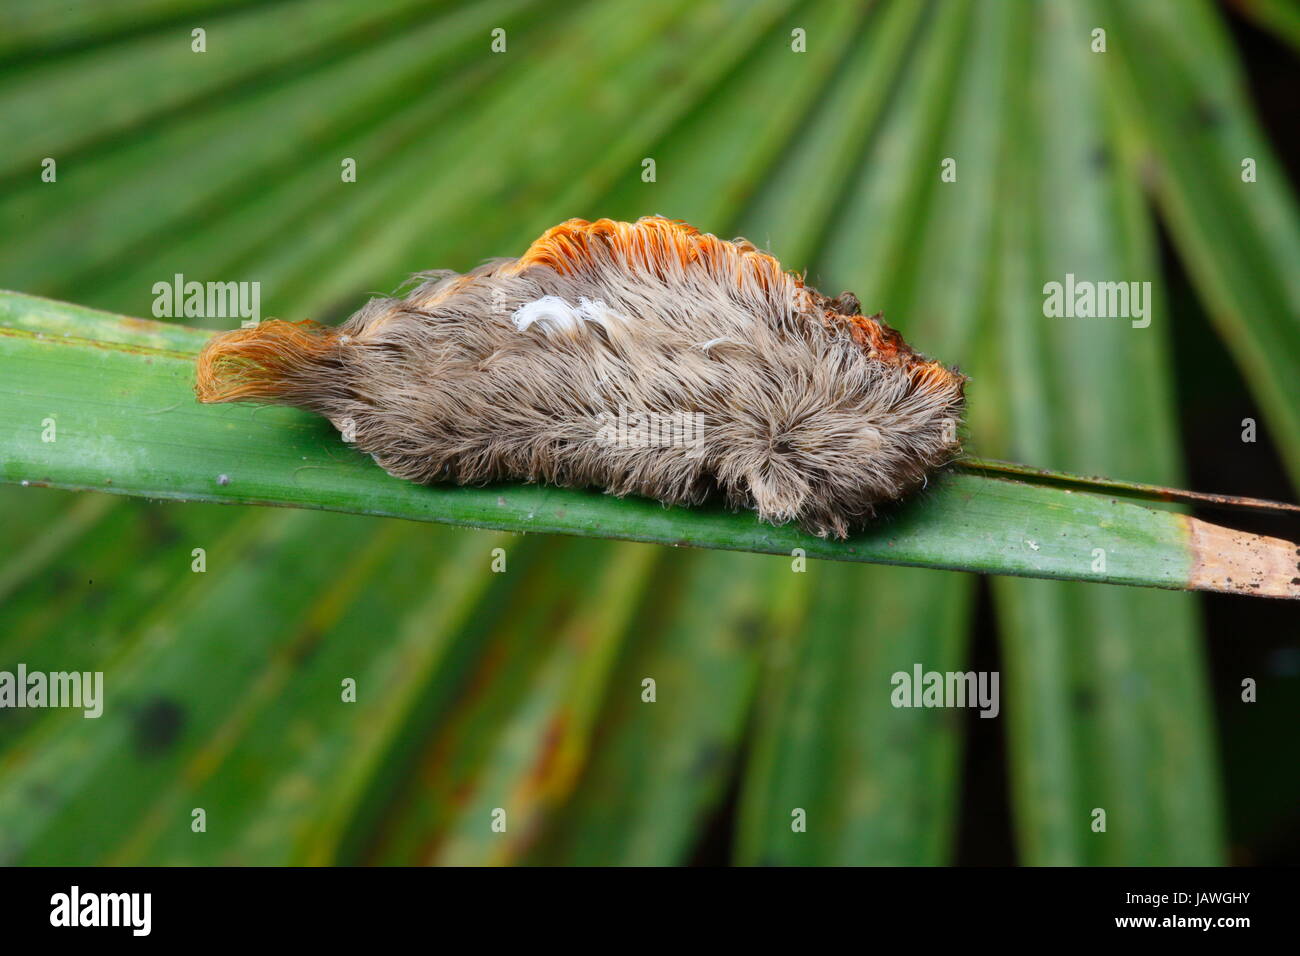 Close up of a southern puss caterpillar, Megalopyge opercularis. Stock Photo